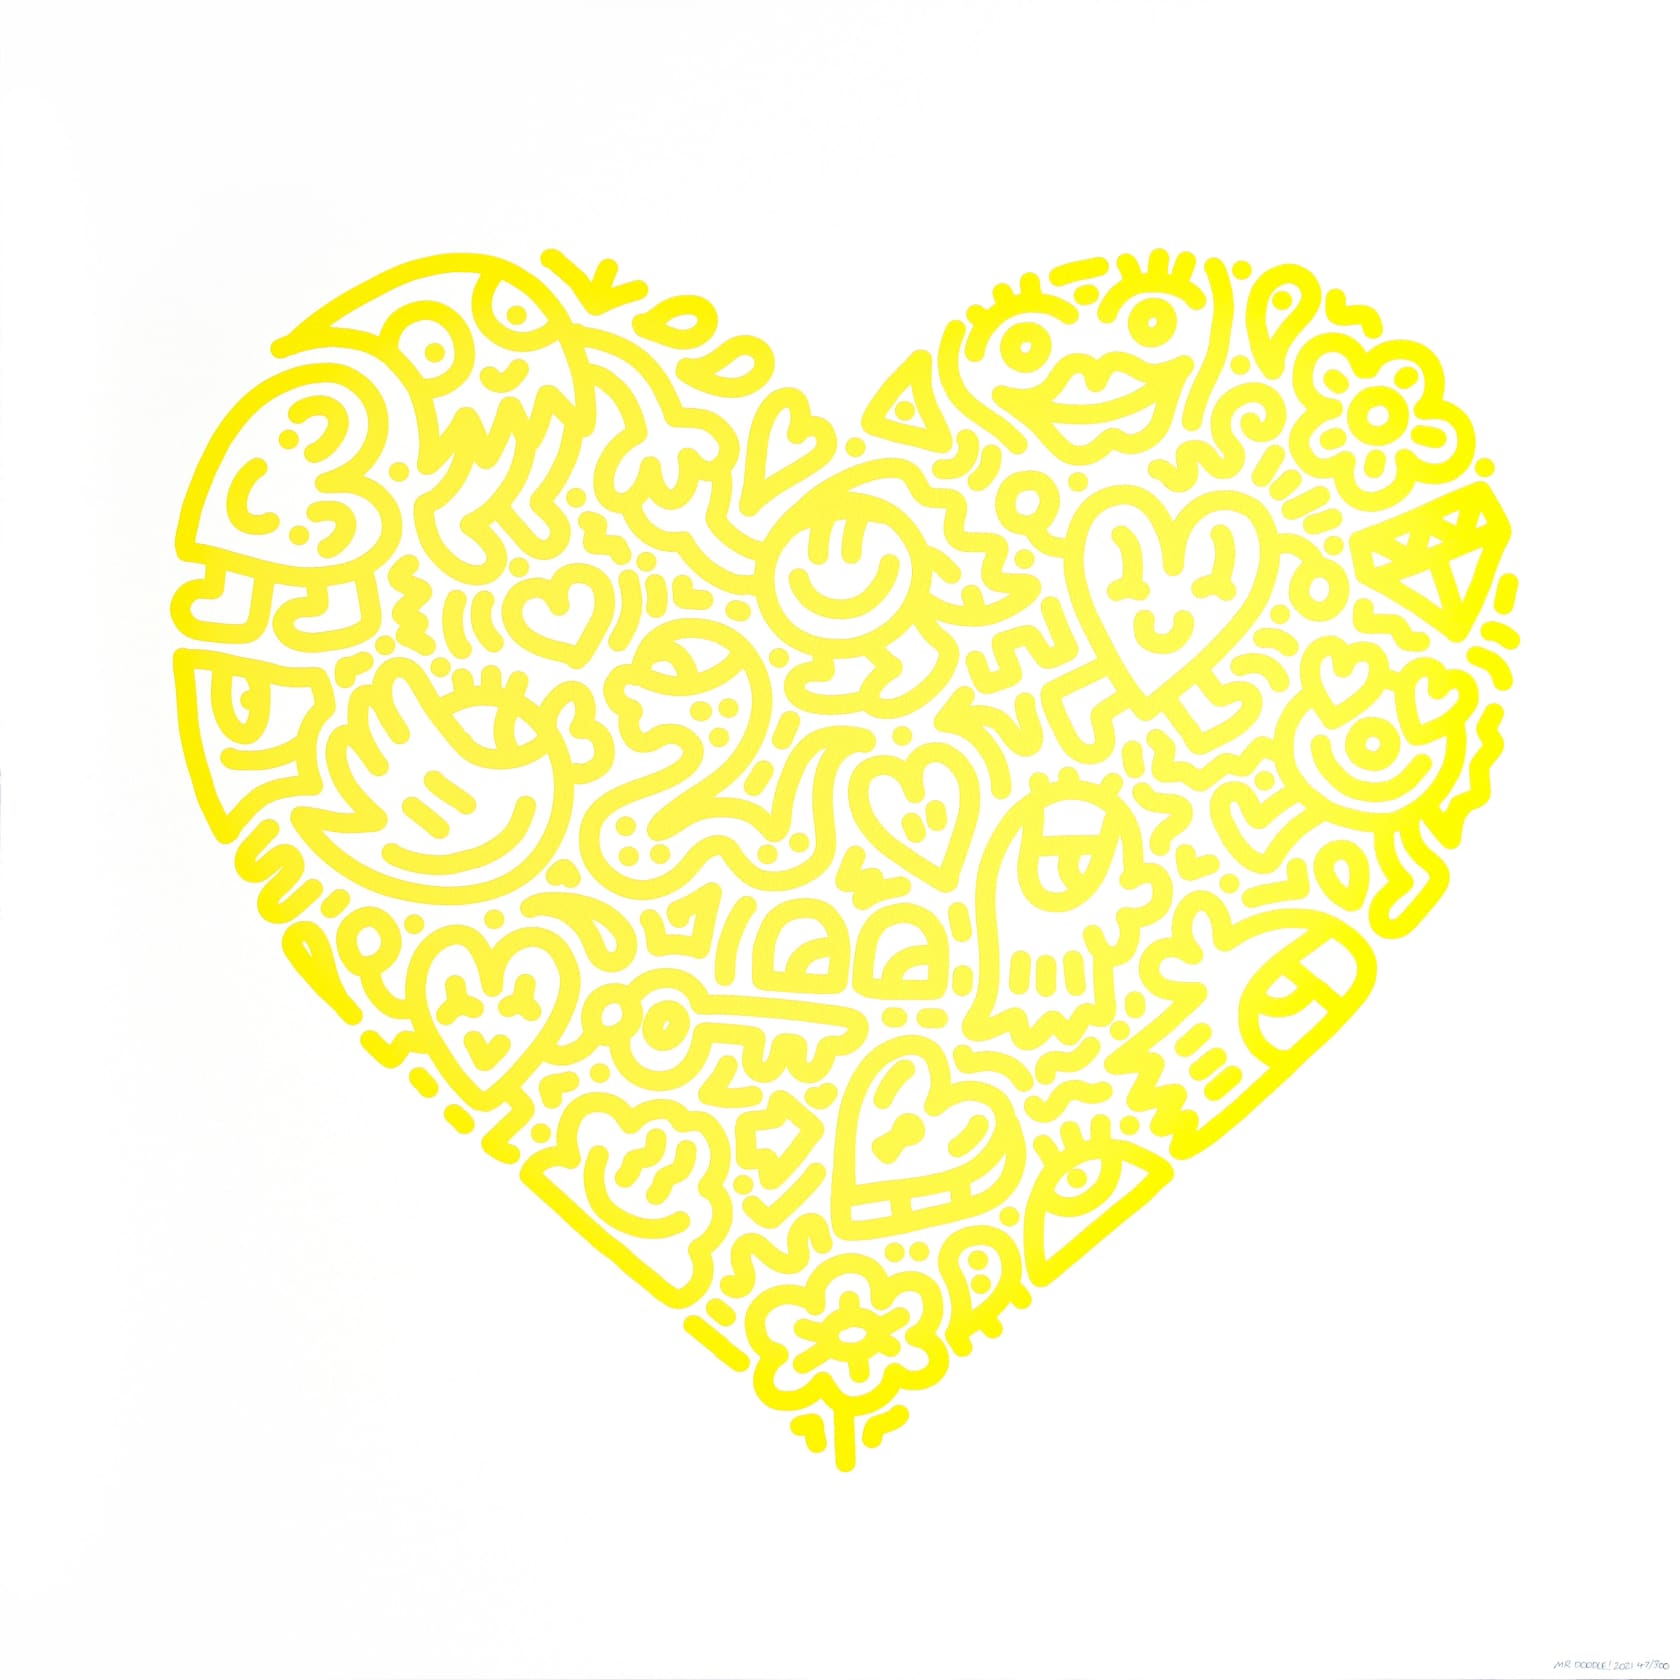 Mr. Doodle, Pop Heart (Yellow), 2021